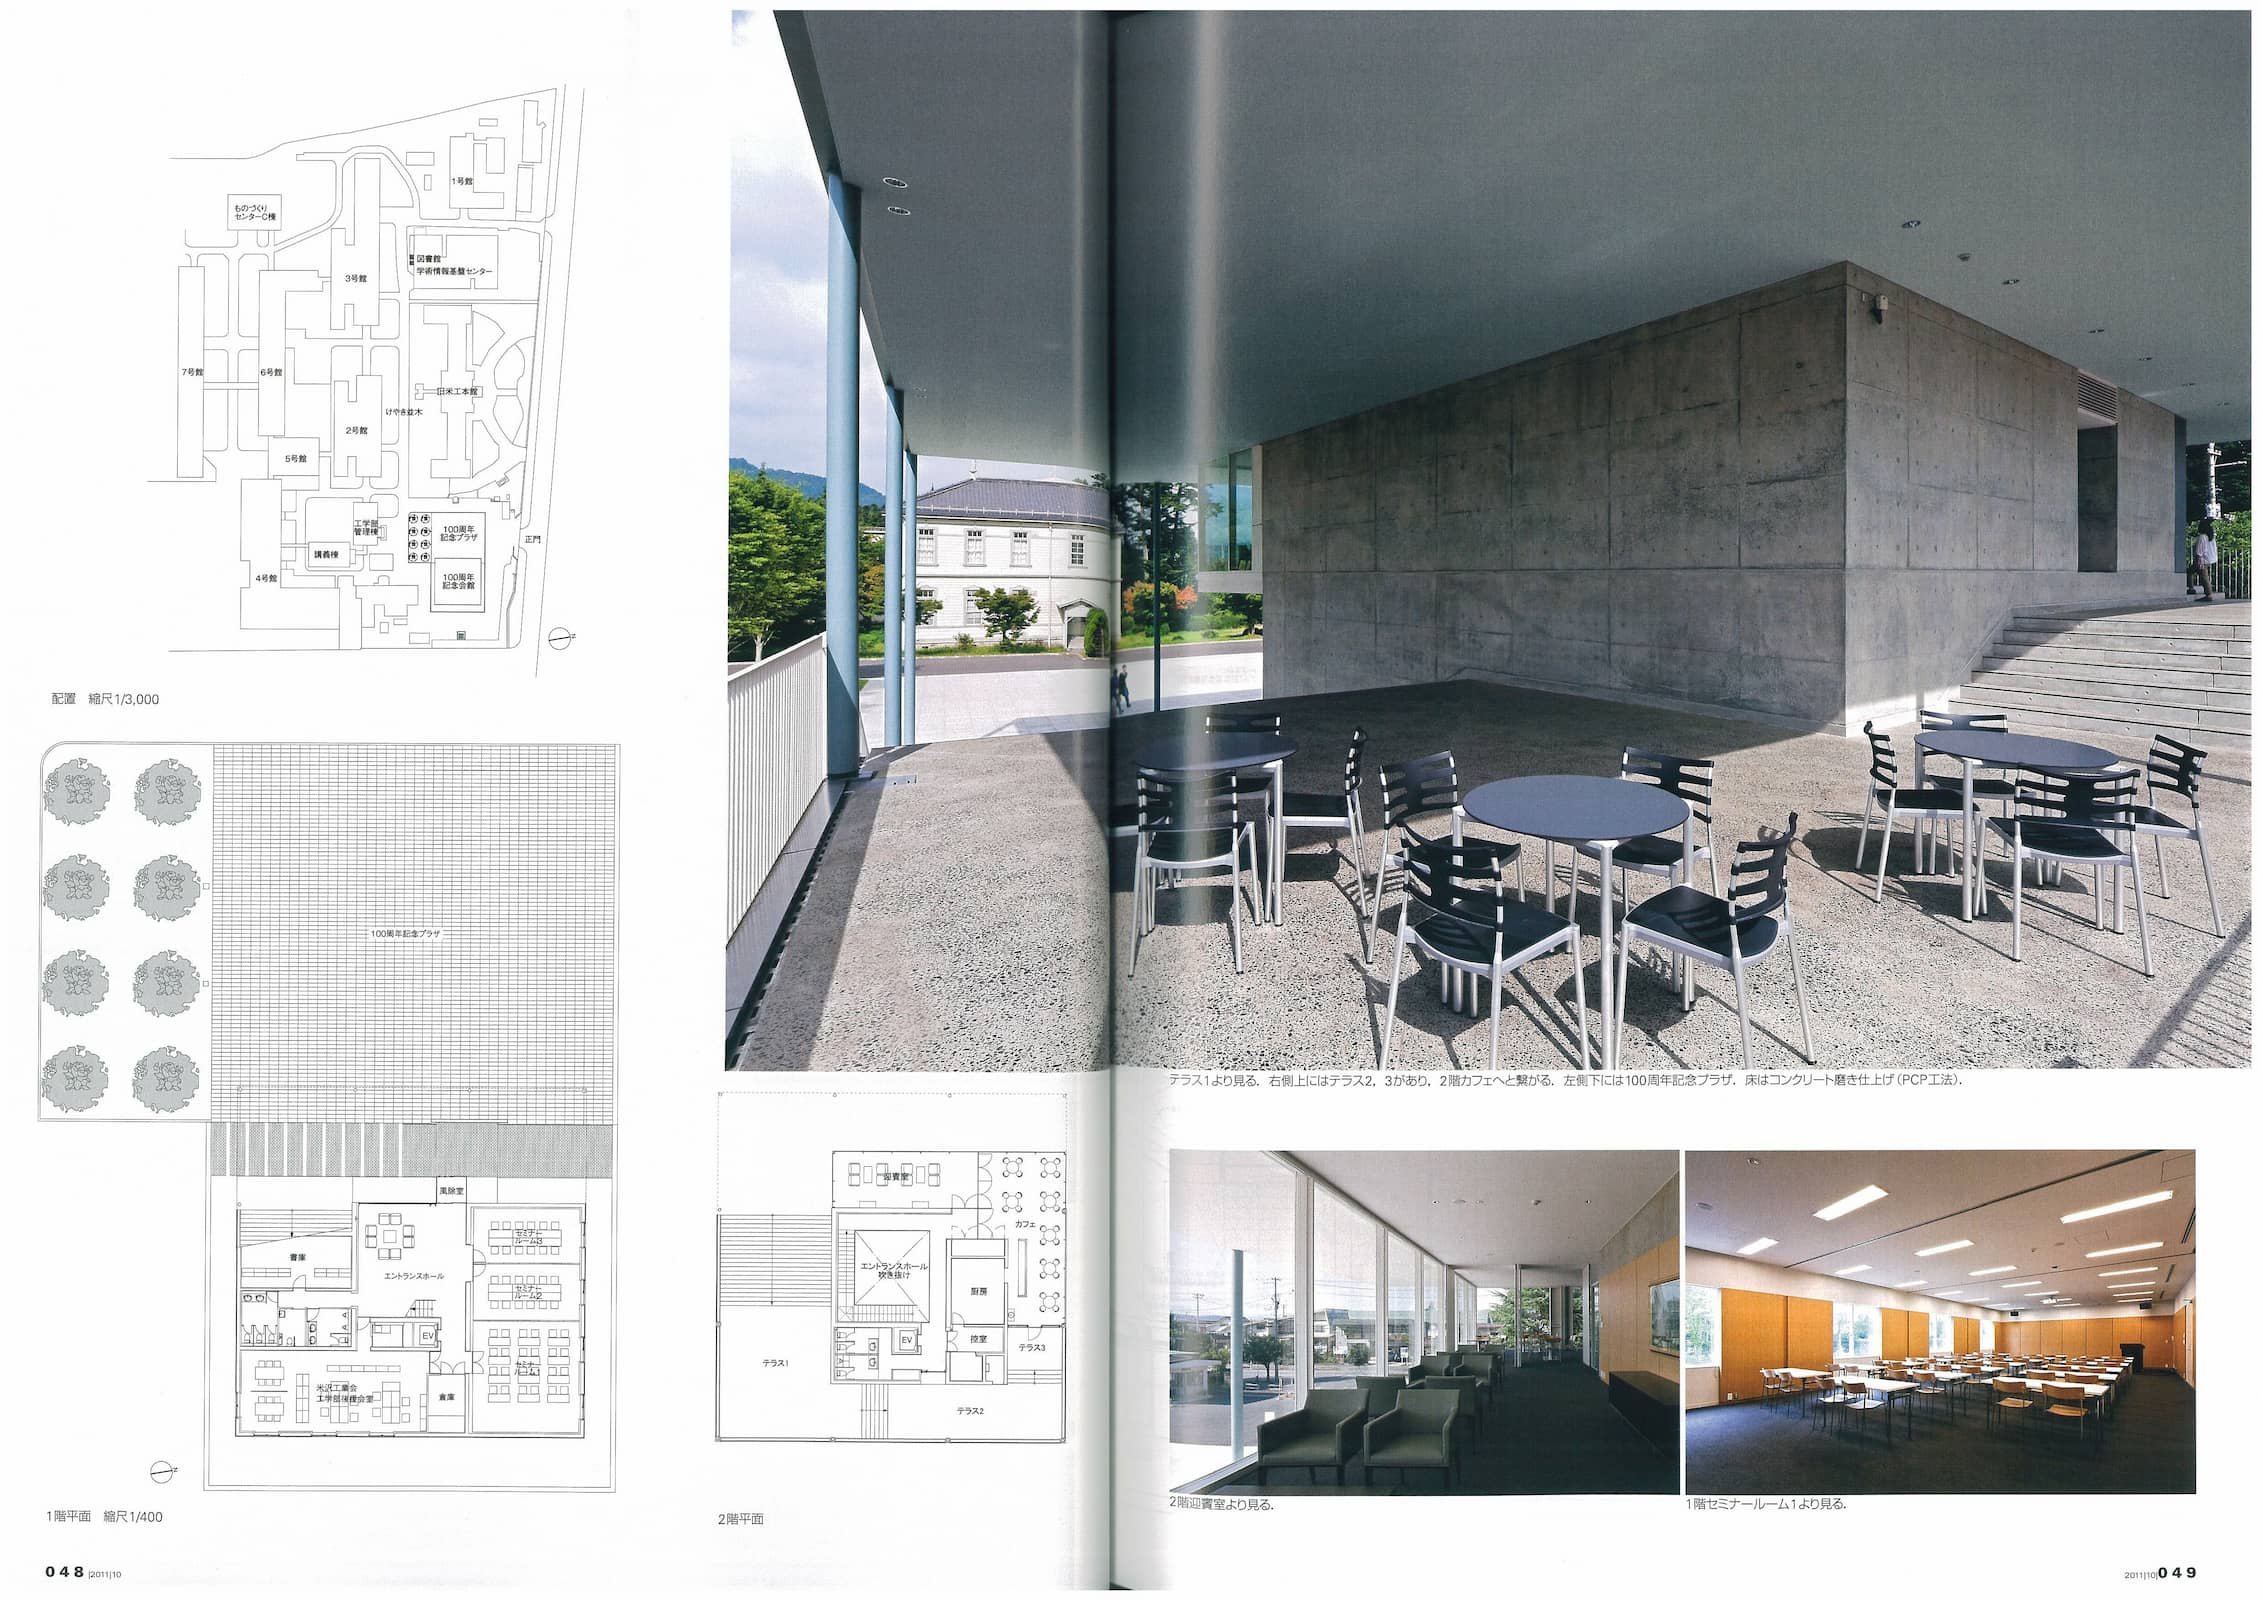 新建築 - New Architecture - October 2011_Page_5.jpg